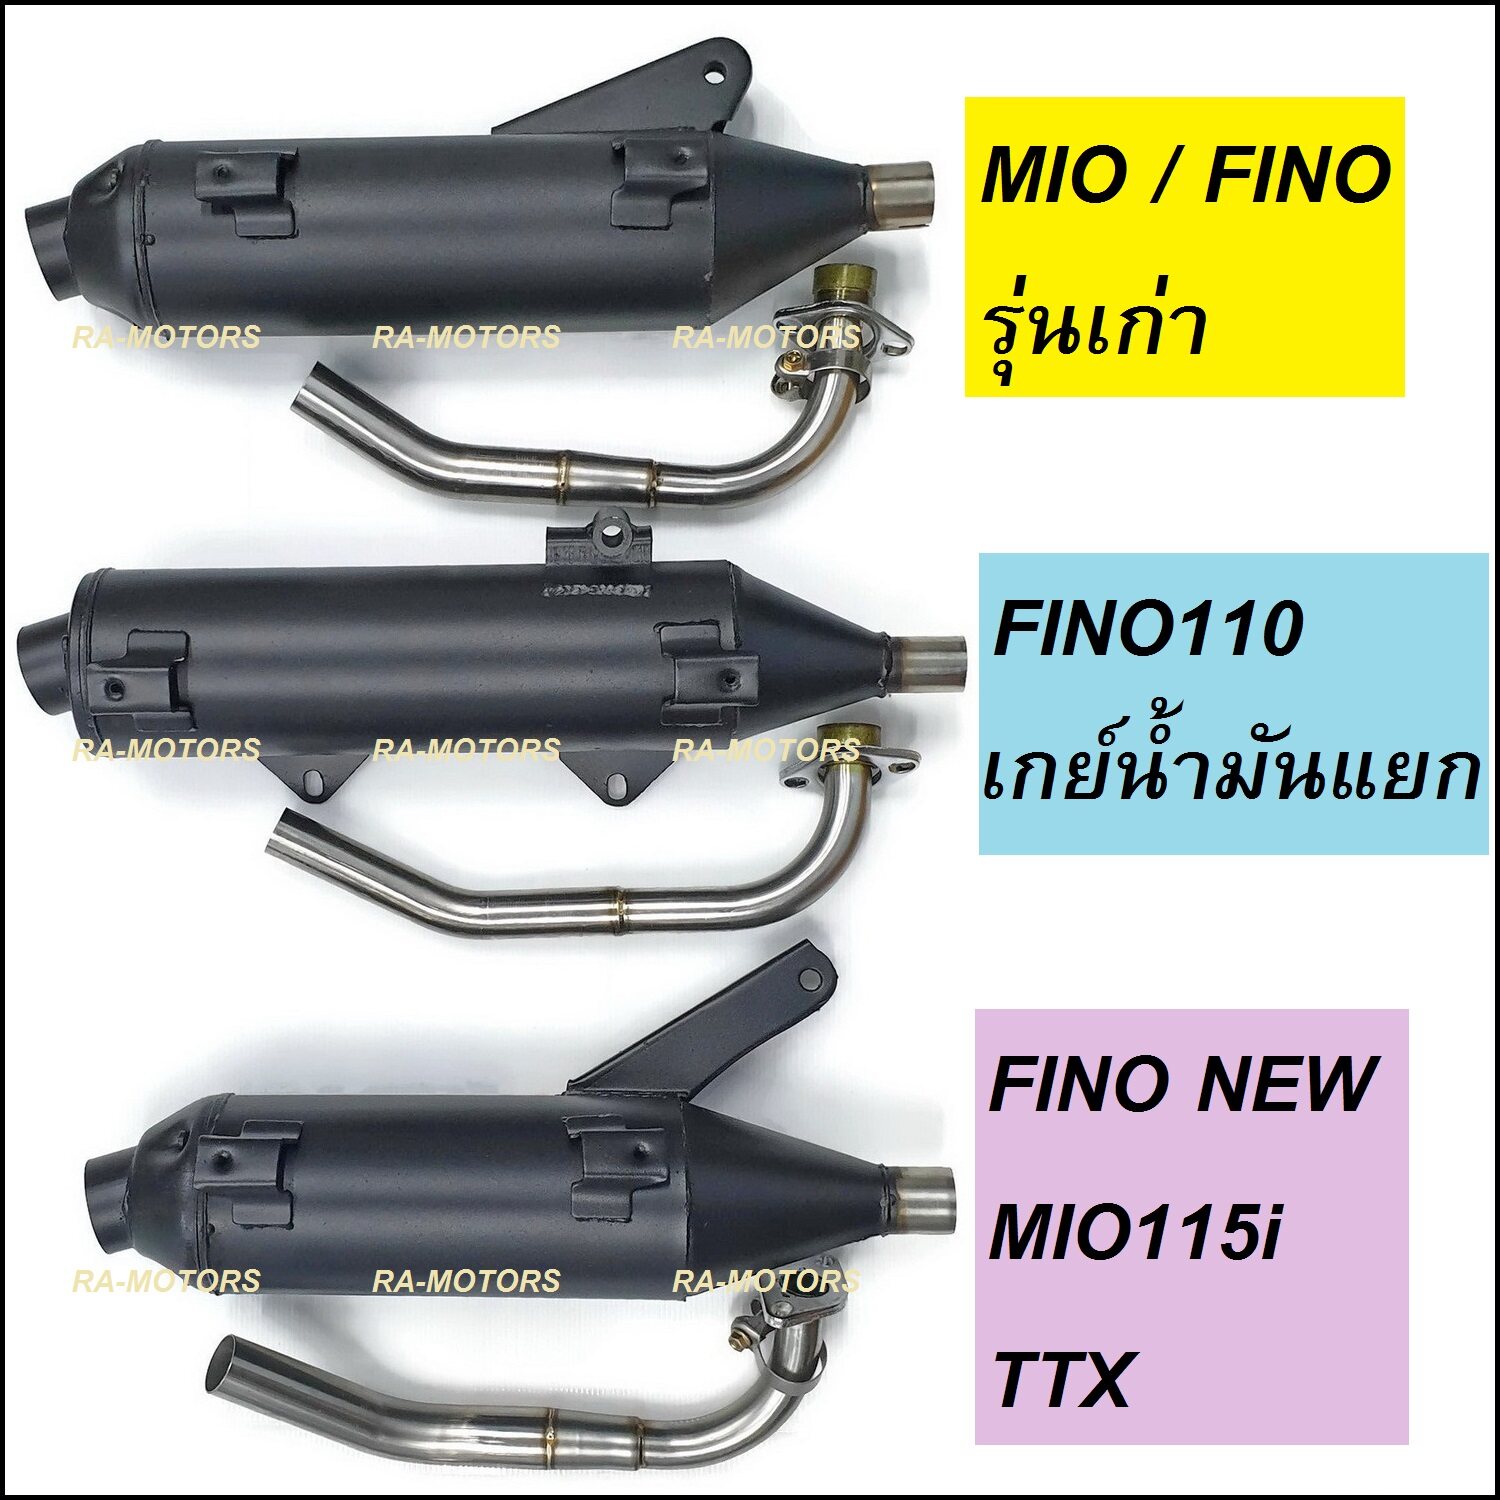 (A) SPEED ท่อผ่า MIO / FINO / TTX มีให้เลือก 3 รุ่น ท่อผ่าดัง ไม่ใช่ผ่าลั่น (ท่อมีโอ ท่อฟีโน่ ท่อผ่ามีโอ ท่อผ่าฟีโน่ ท่อTTX)